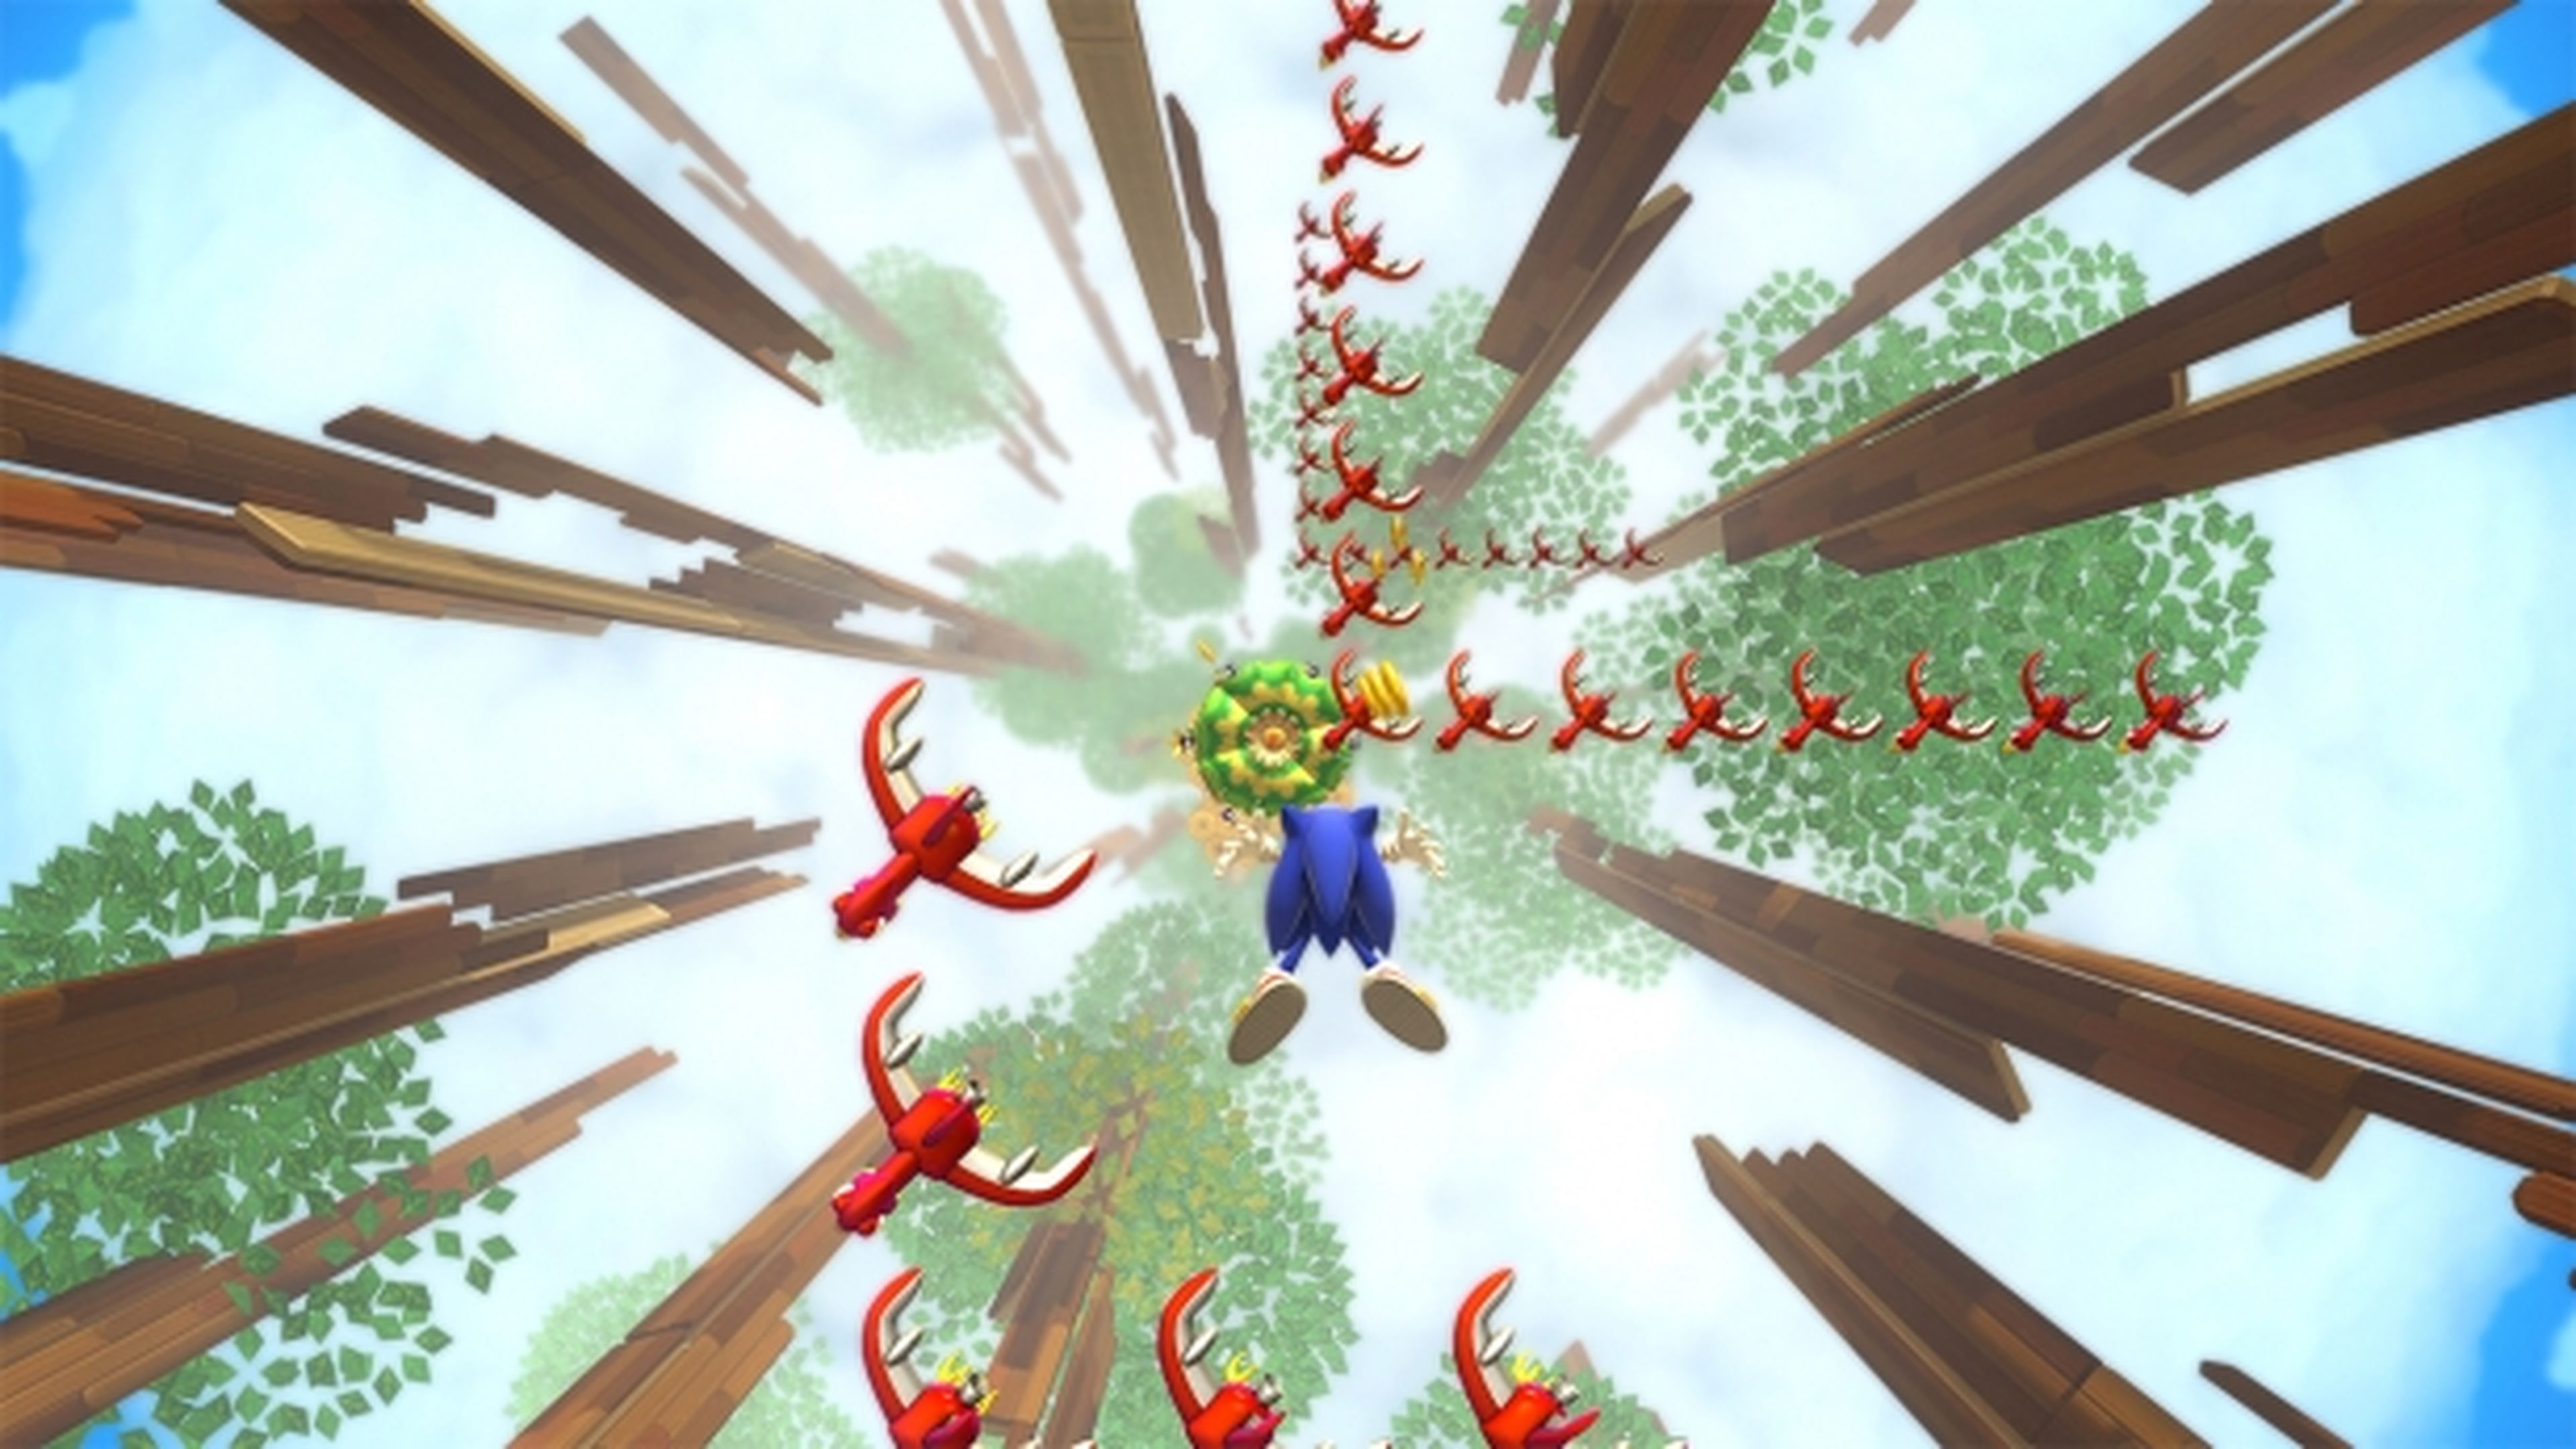 Análisis de Sonic Lost World para Wii U